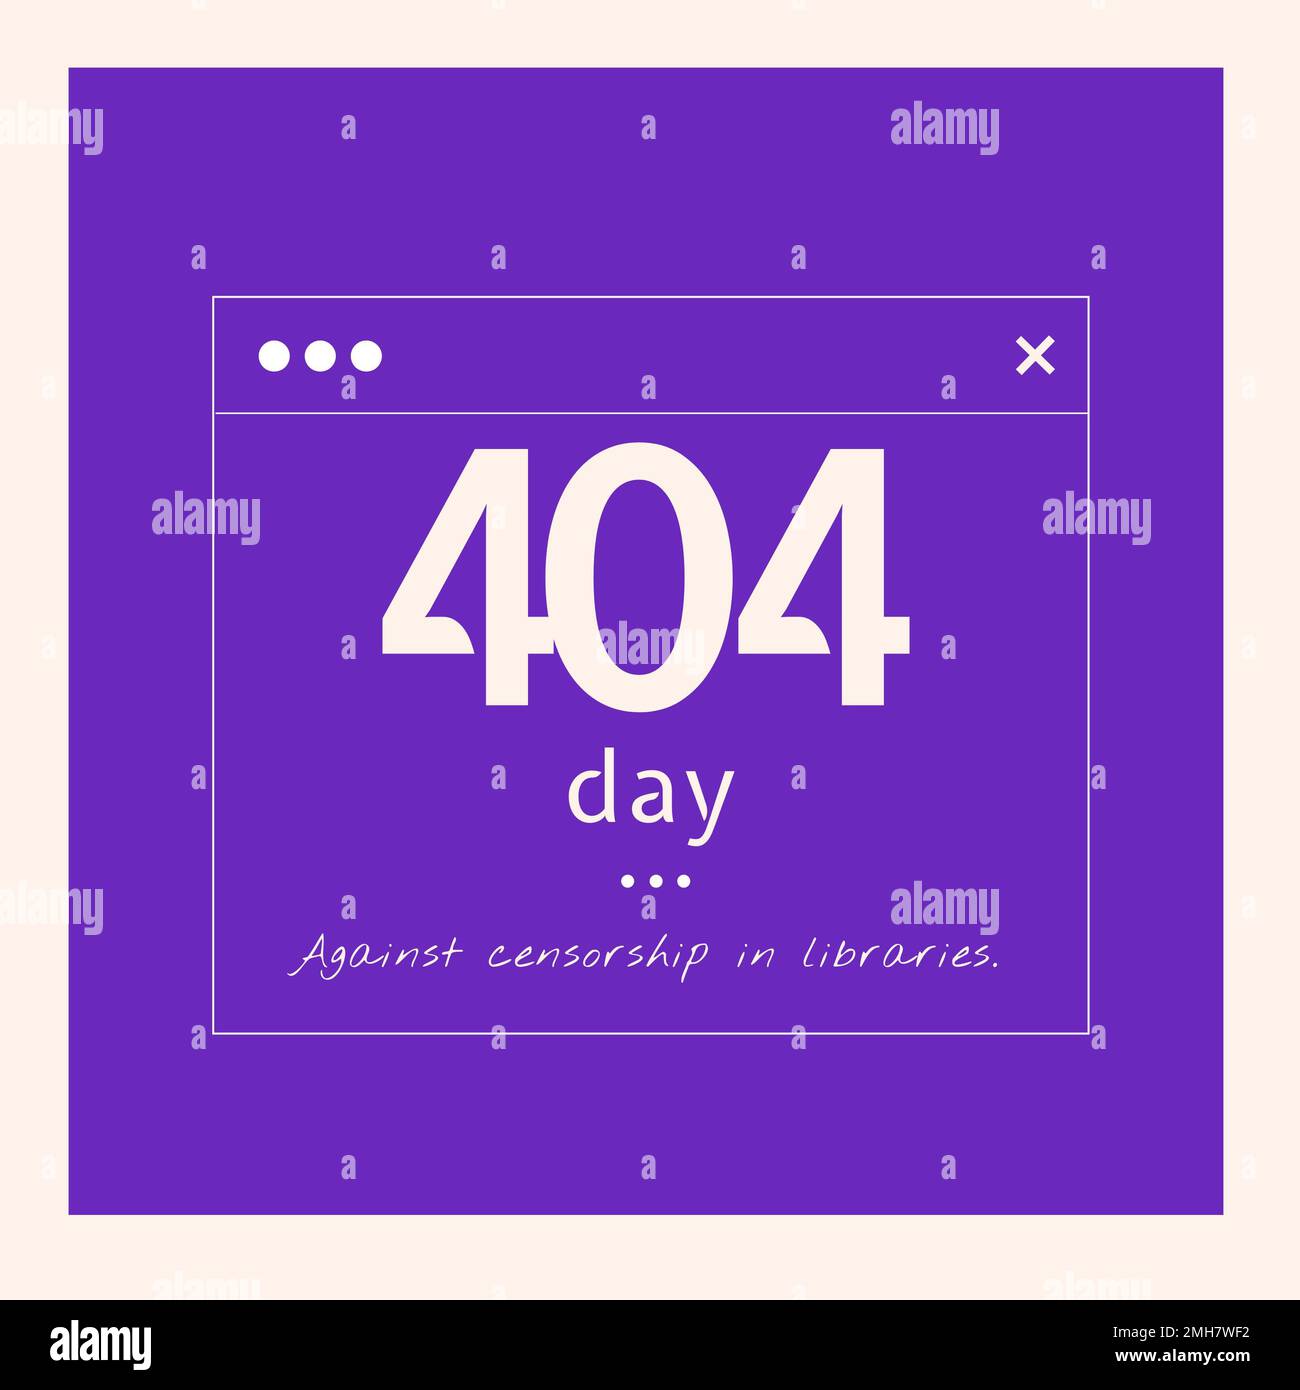 Zusammensetzung des 404. Tages gegen Zensur in Bibliothekstexten auf blauem Hintergrund Stockfoto